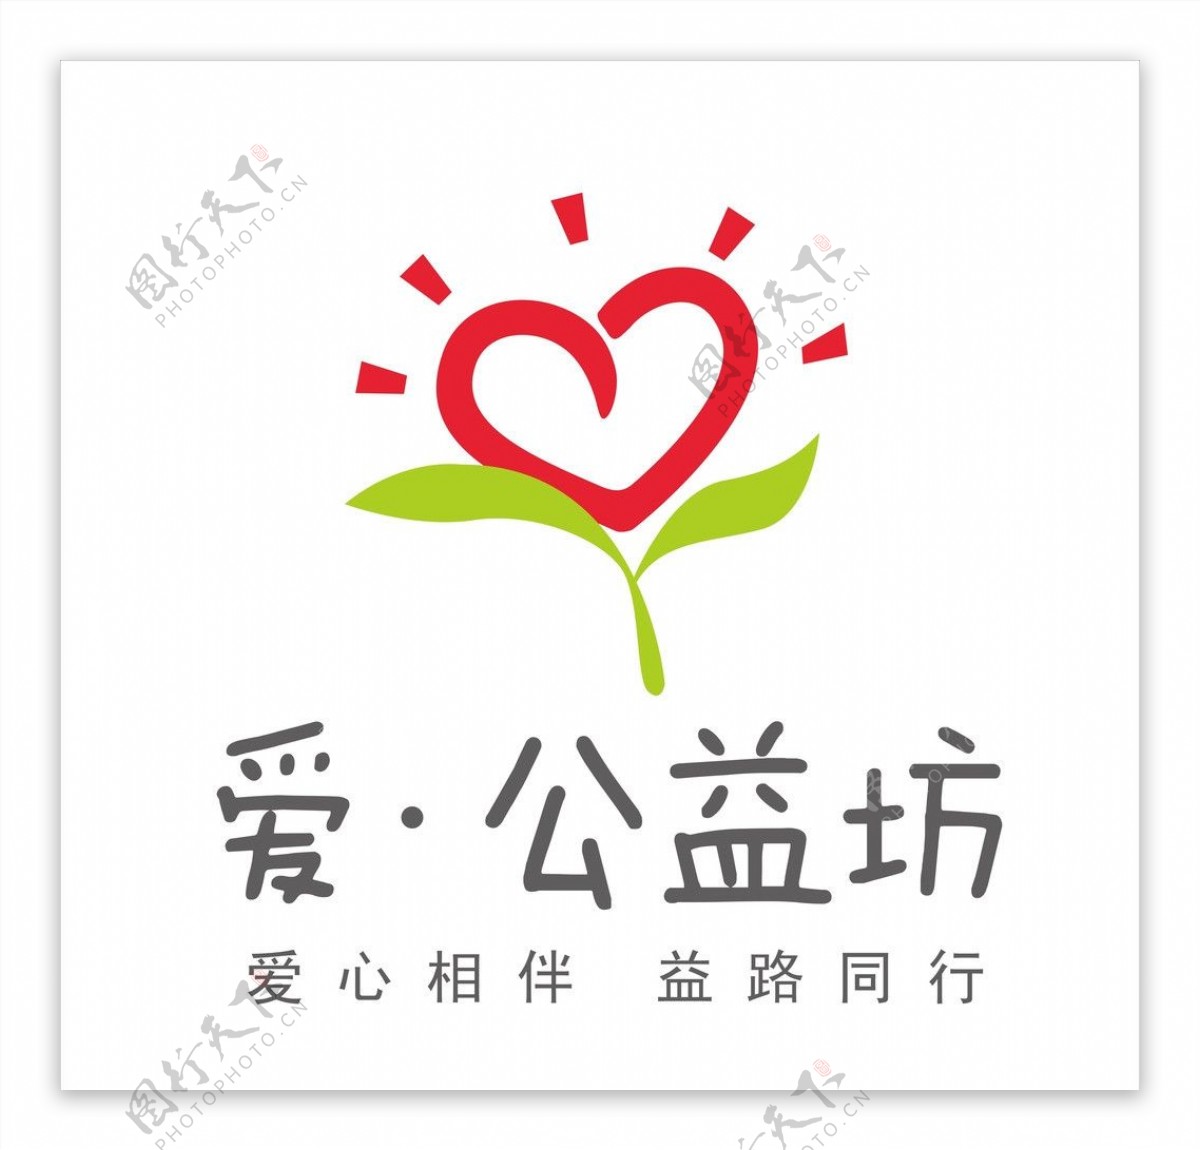 爱公益坊logo